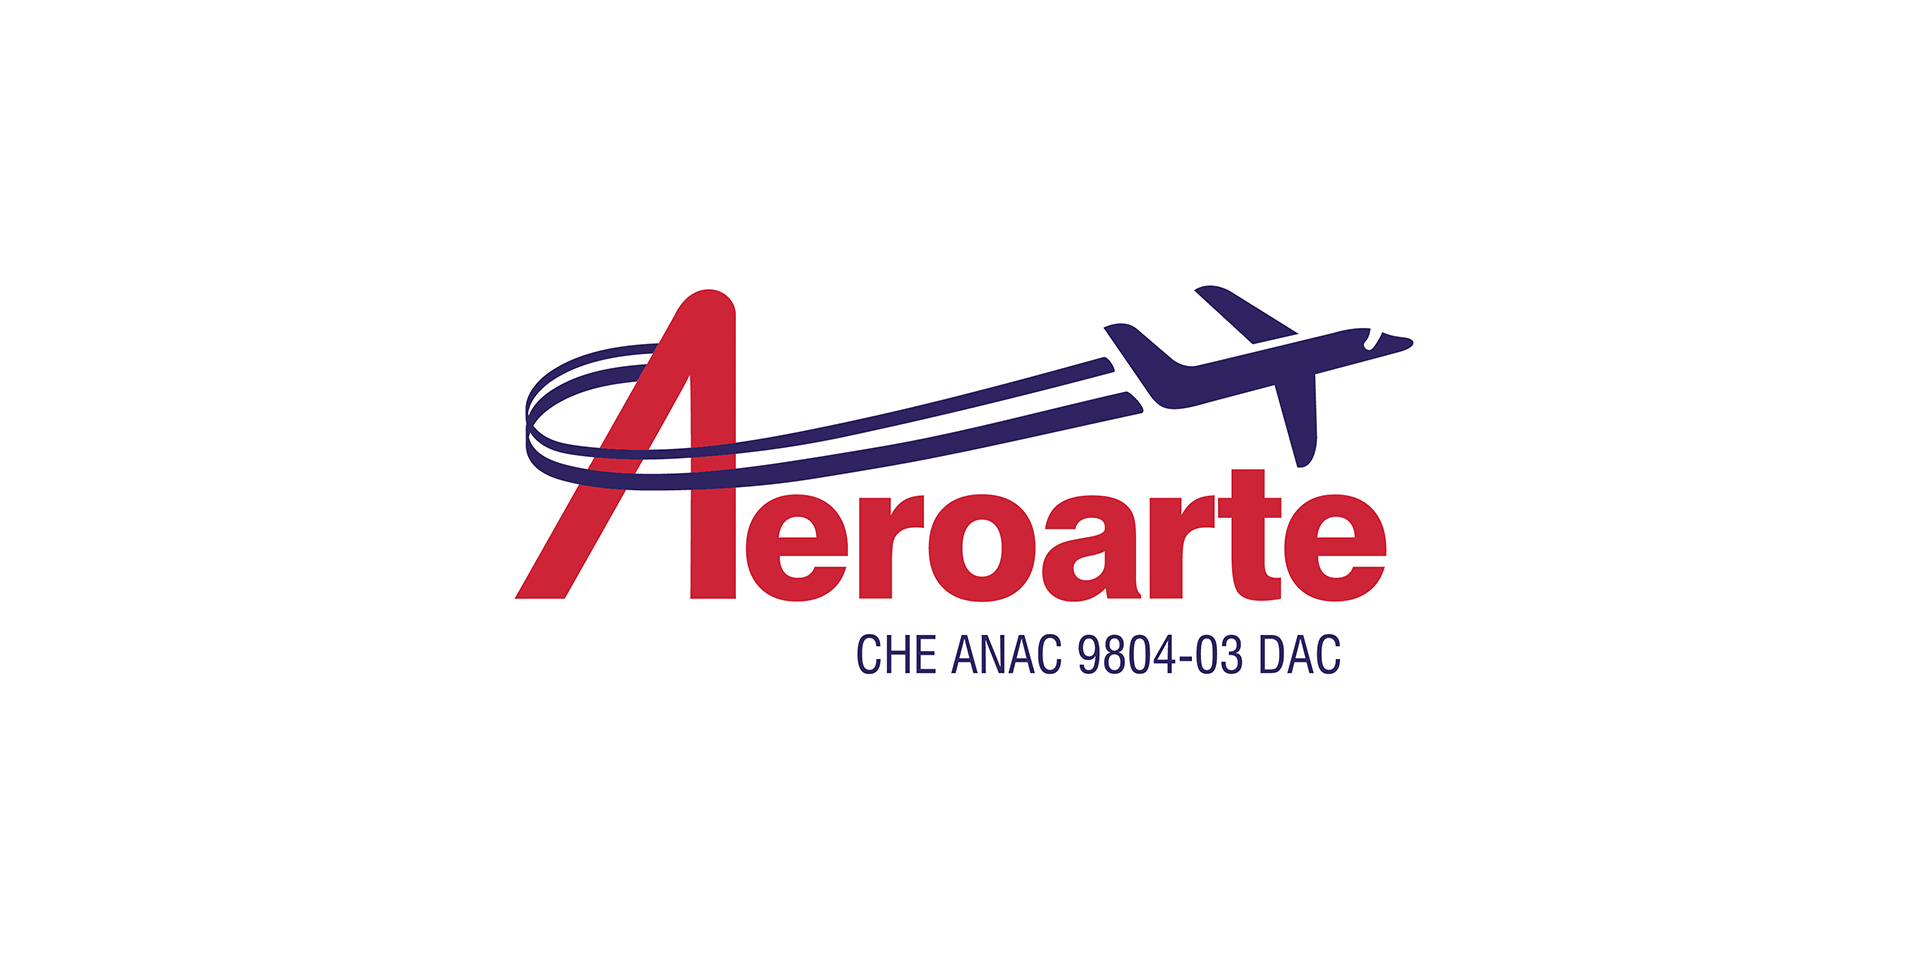 Case Aeroarte | EnterDesign